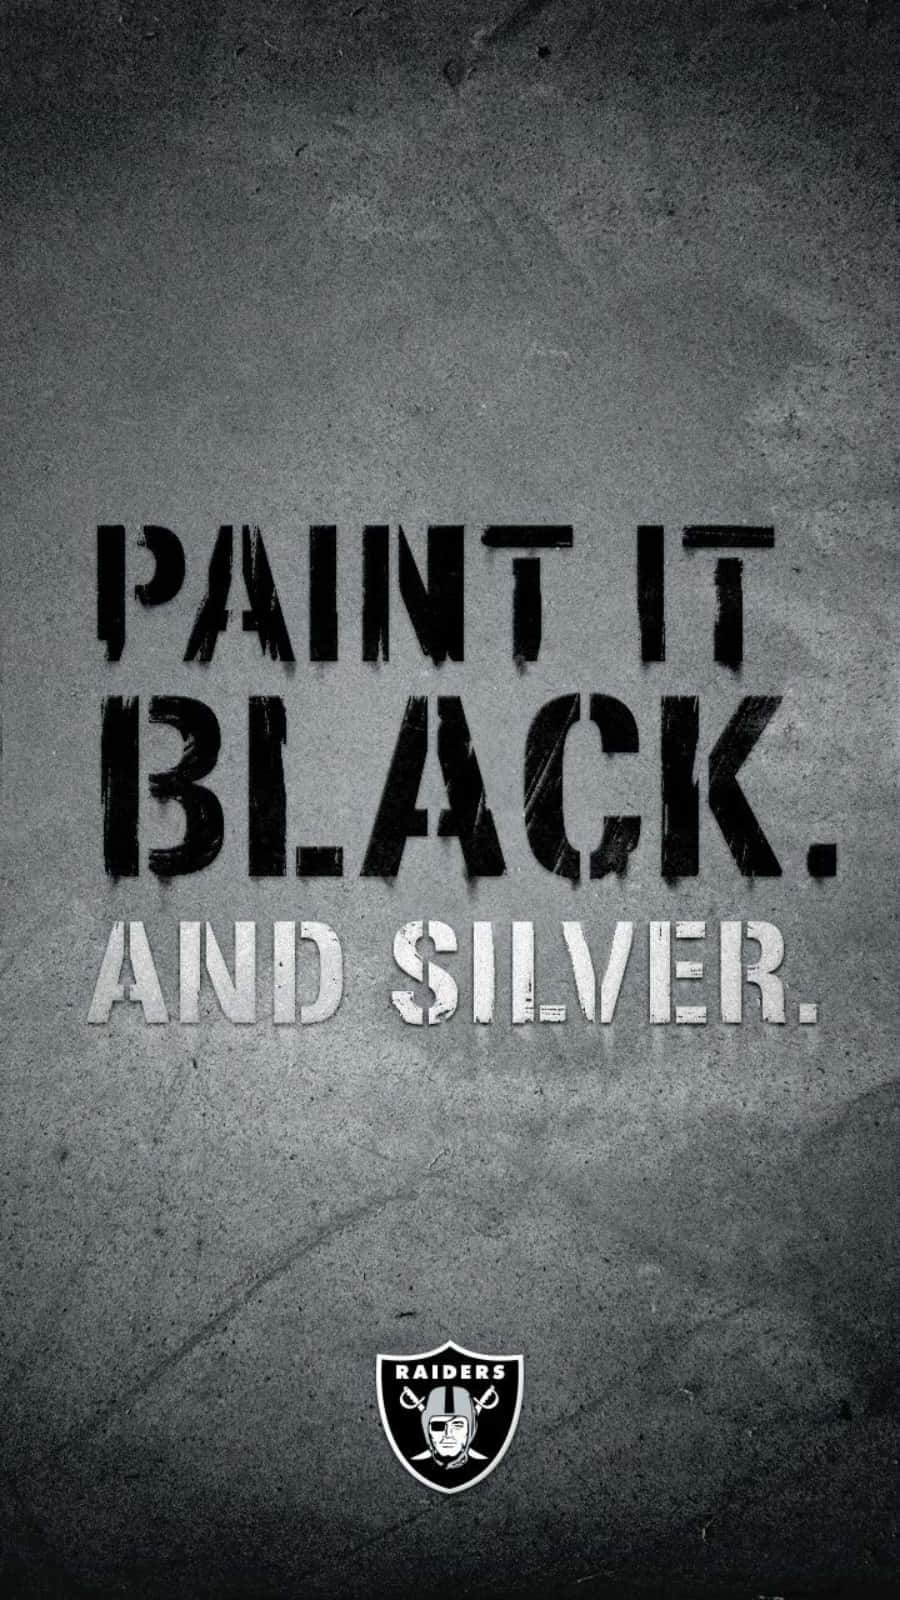 Logodei Raiders, Dipinto Di Nero E Argento Sfondo